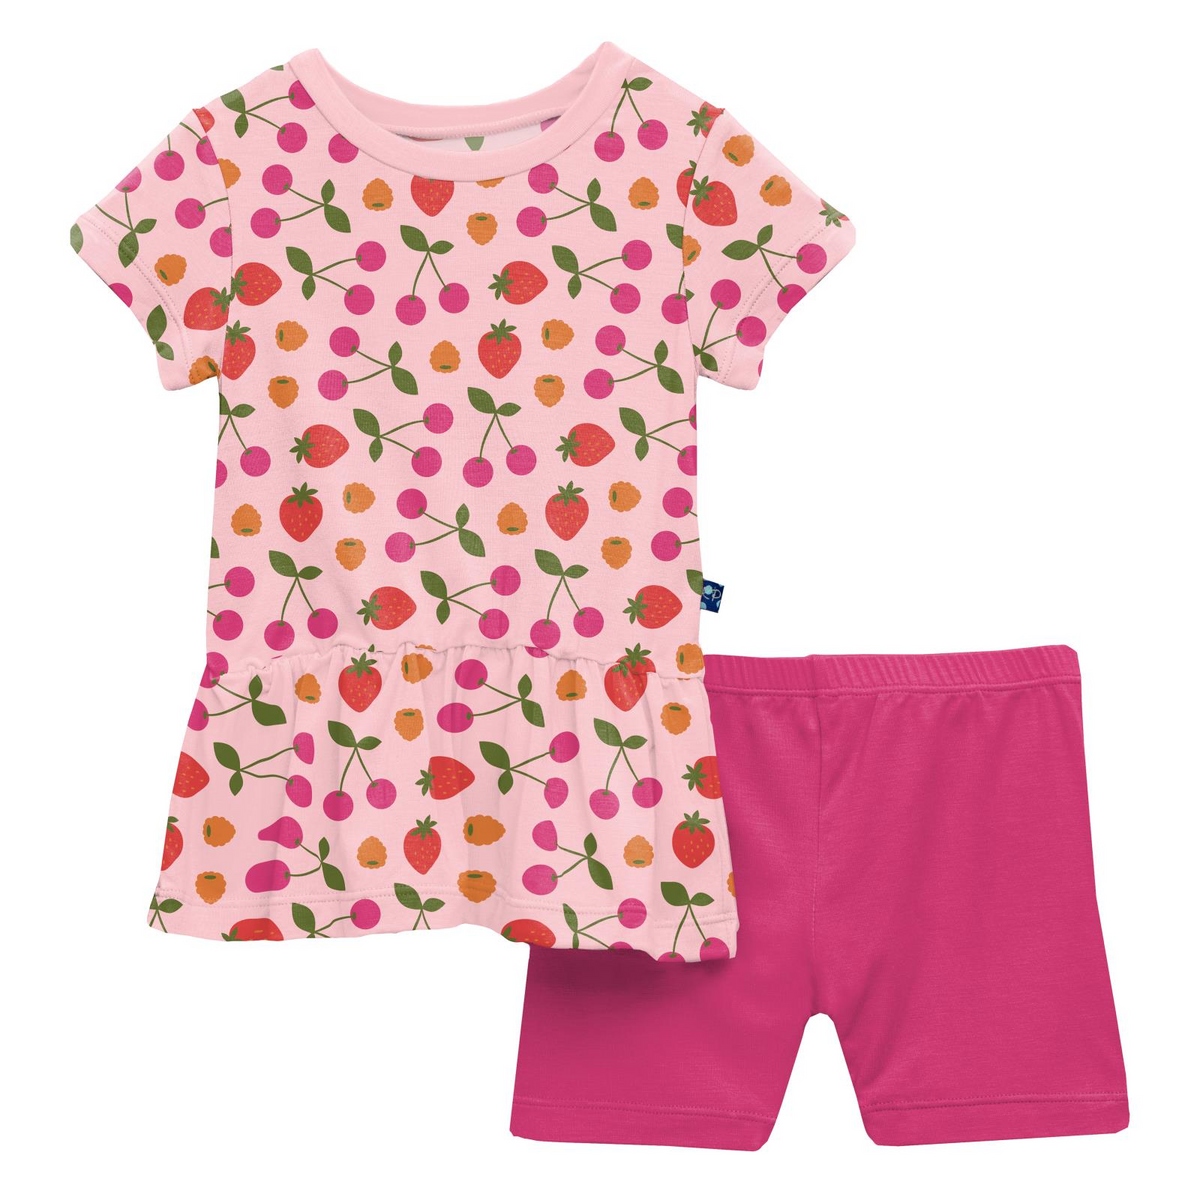 Lotus Berries Print Short Sleeve Playtime Outfit Set